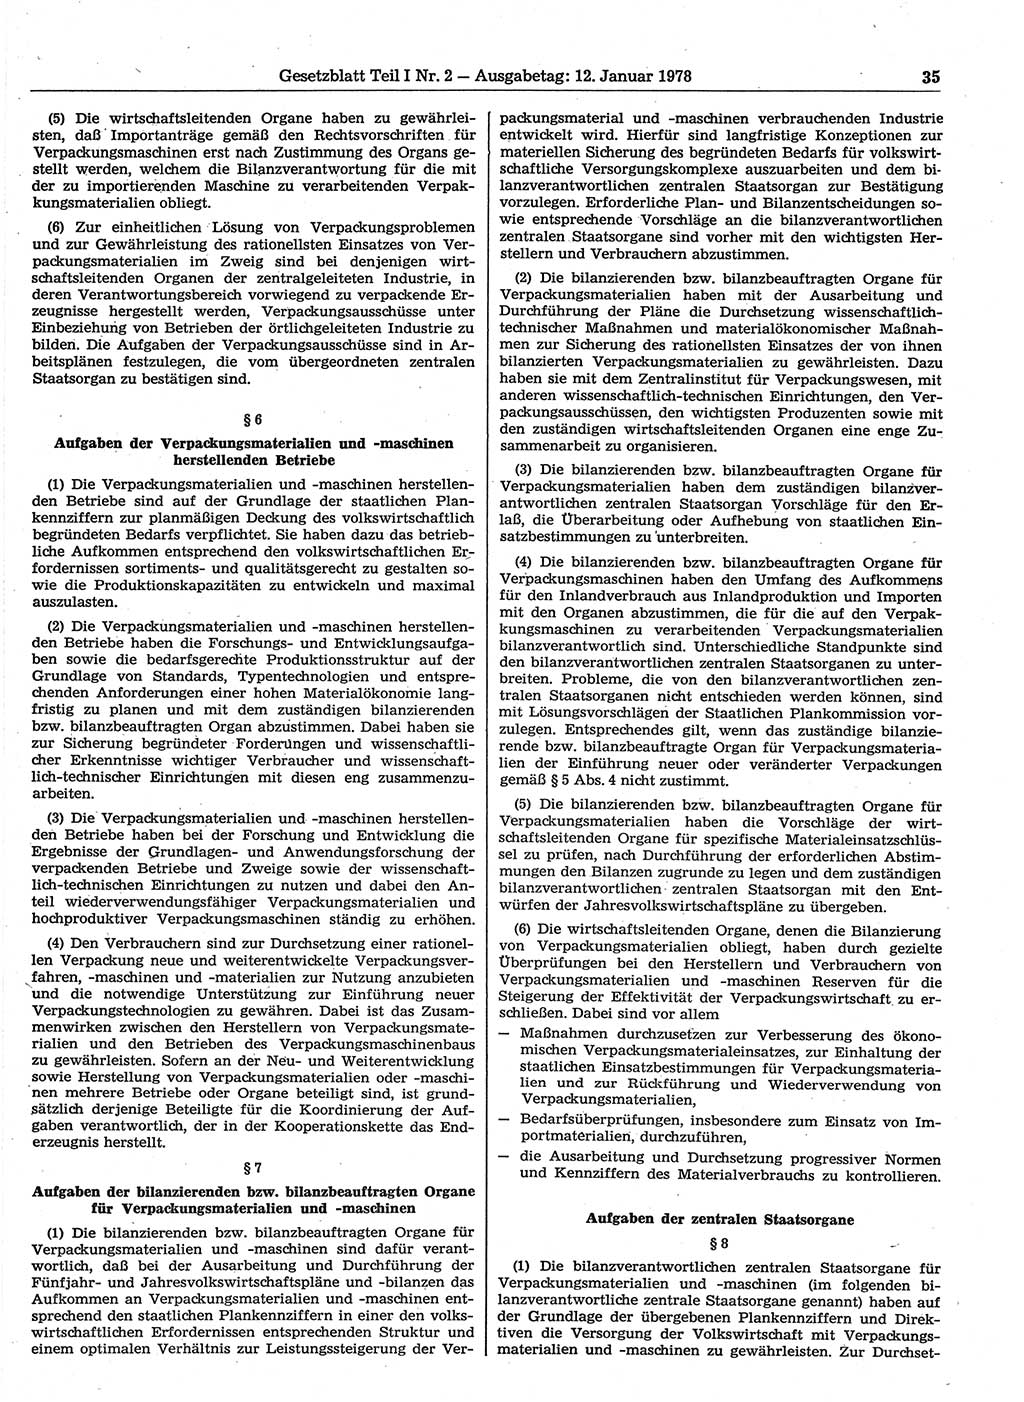 Gesetzblatt (GBl.) der Deutschen Demokratischen Republik (DDR) Teil Ⅰ 1978, Seite 35 (GBl. DDR Ⅰ 1978, S. 35)